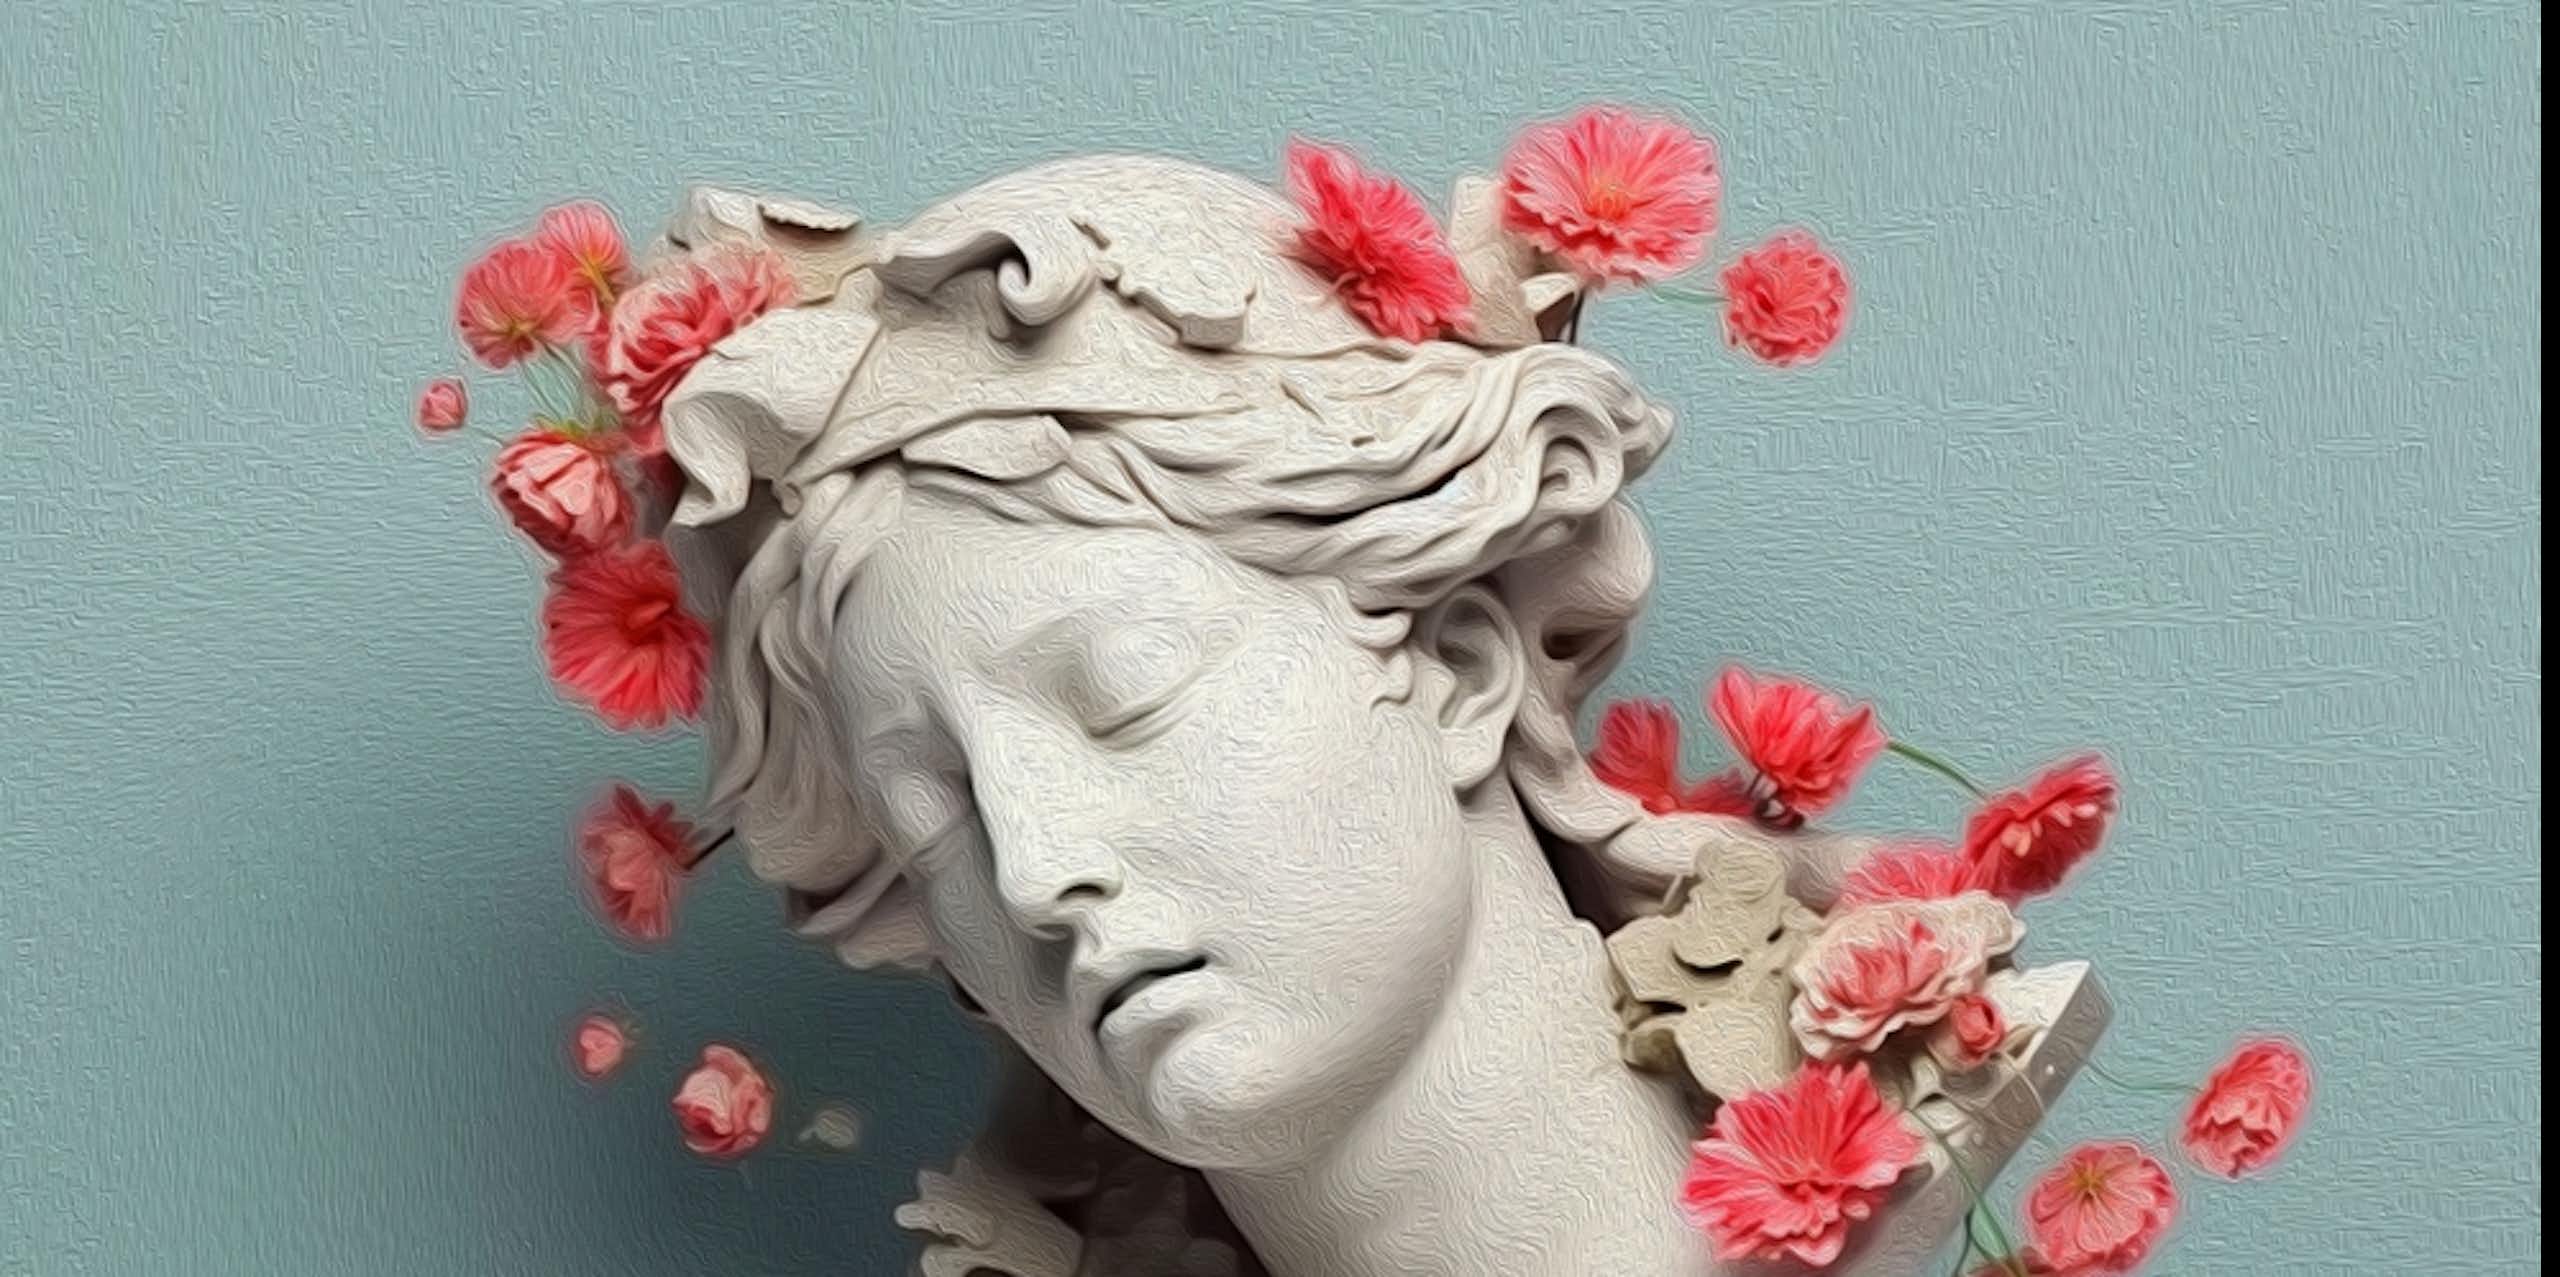 Busto greco-romano de mulher, de lado, com flores cor-de-rosa espalhadas